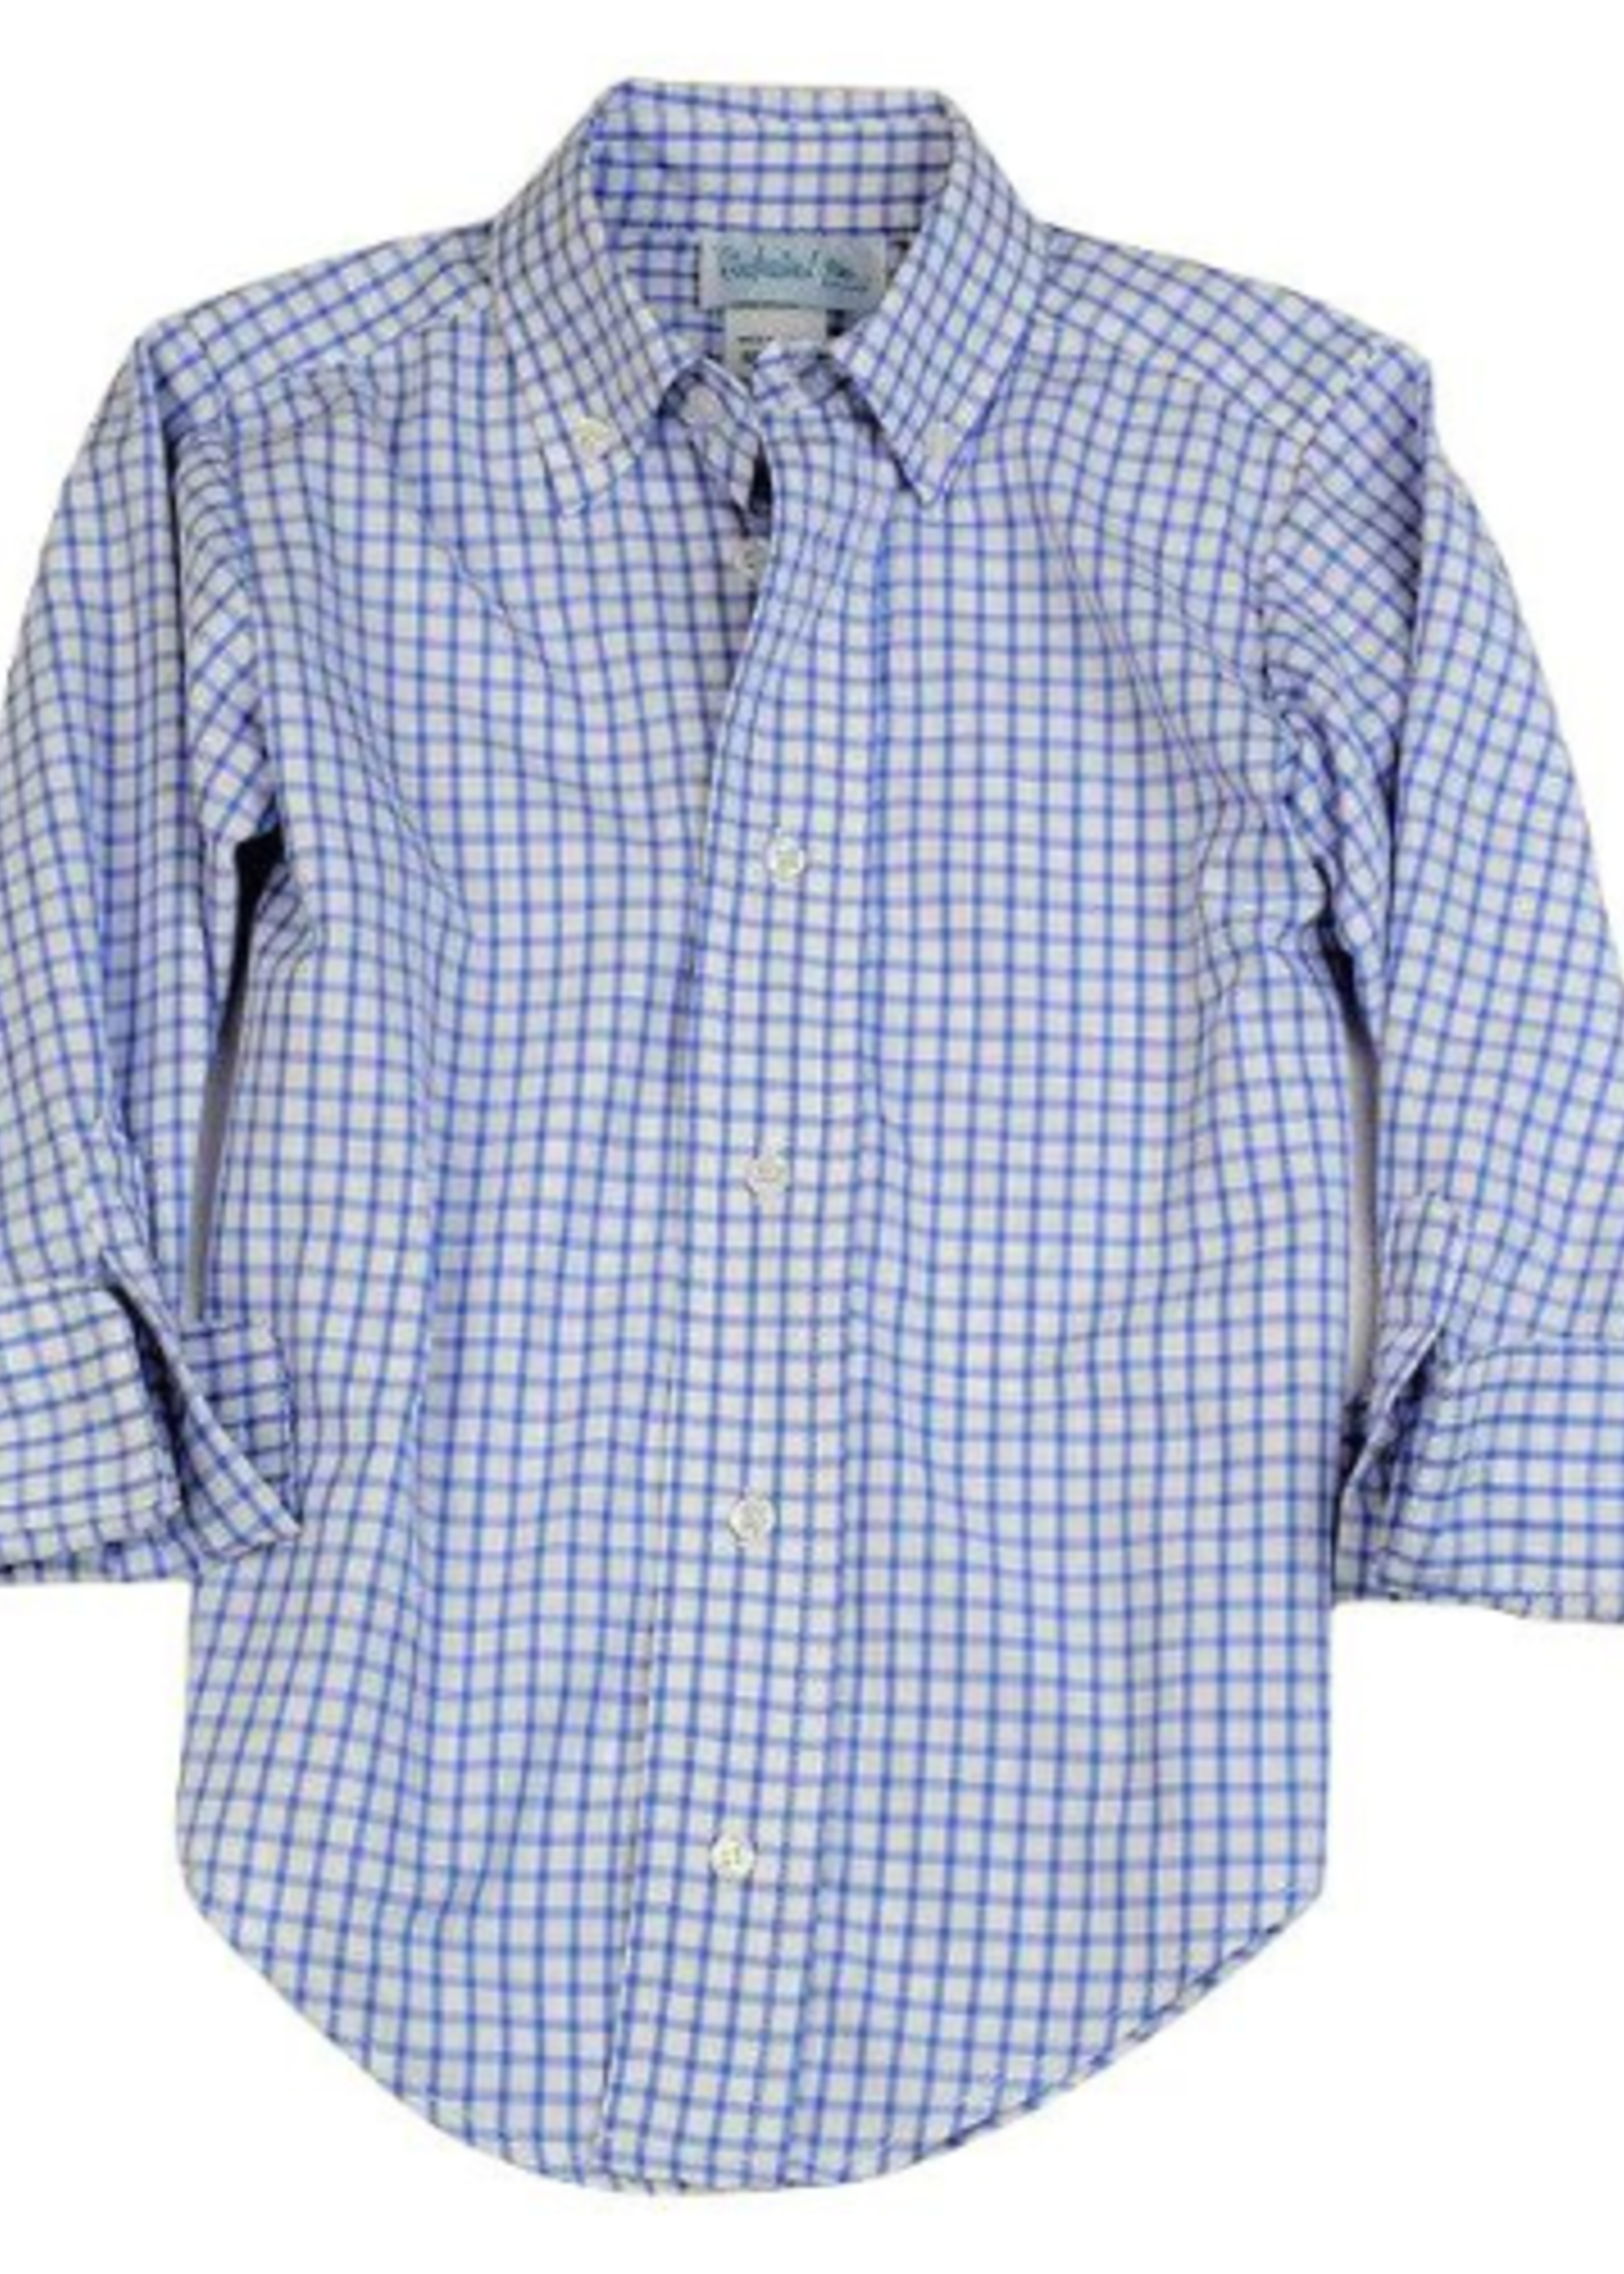 Funtasia Too L/S Blue & White Windowpane Shirt